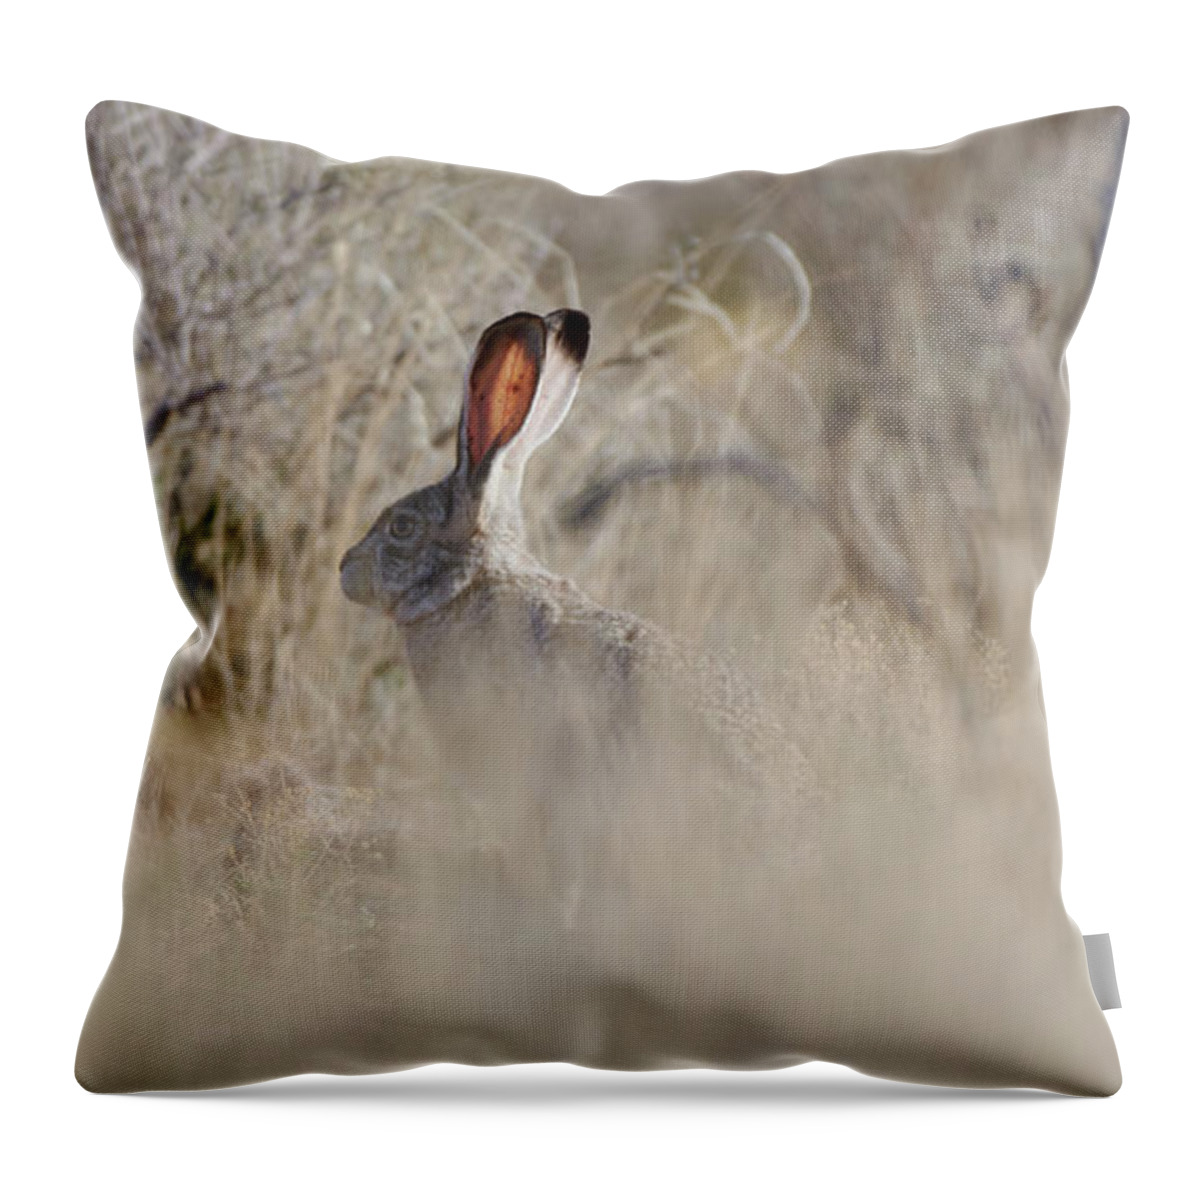 Desert Rabbit Throw Pillow featuring the photograph Desert Bunny by Robert WK Clark